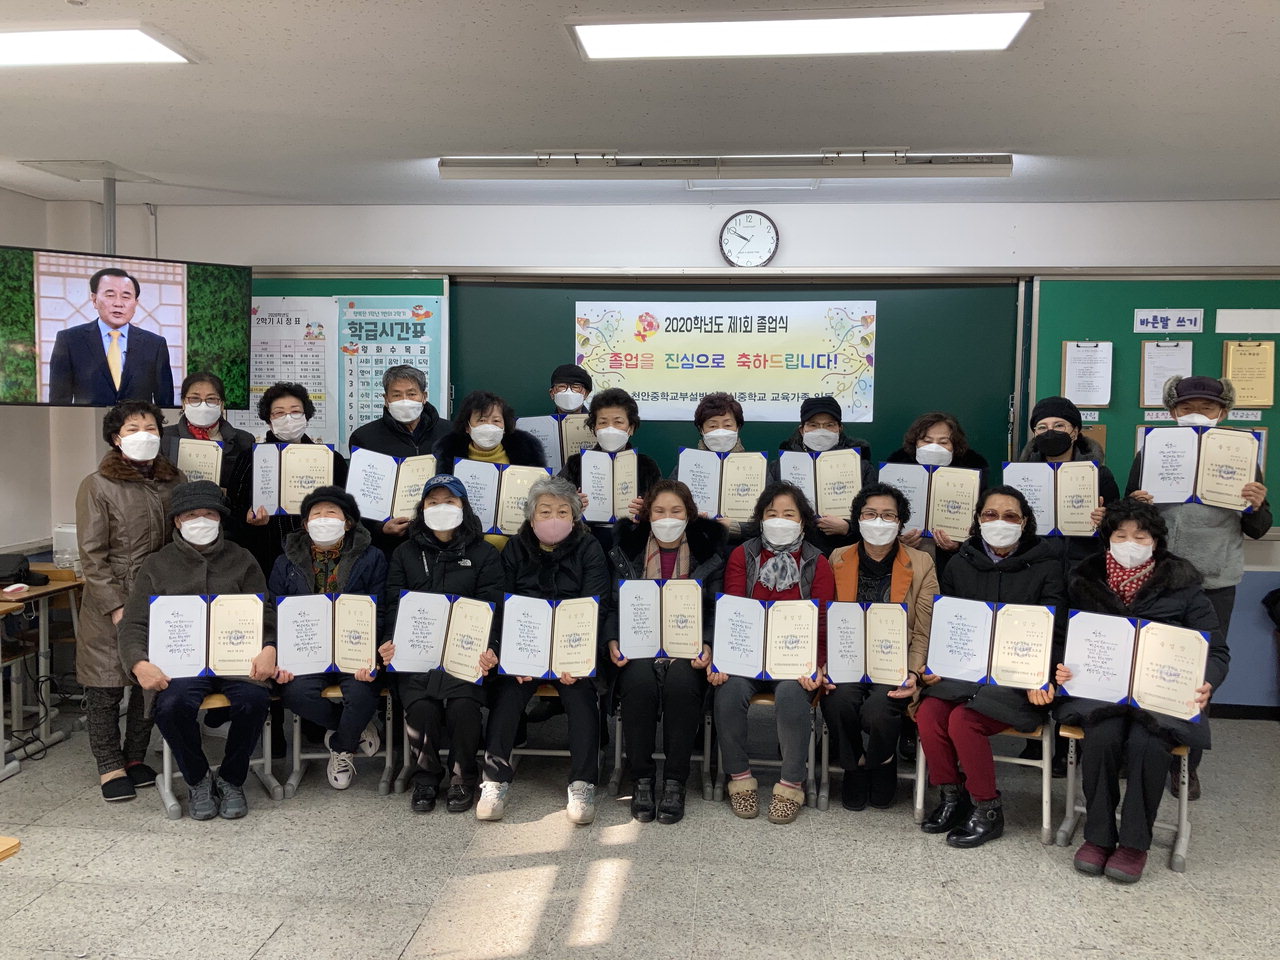 천안중학교 부설 방송통신중학교 첫 졸업생들이 기념촬영을 하고 있다. /충남교육청 제공